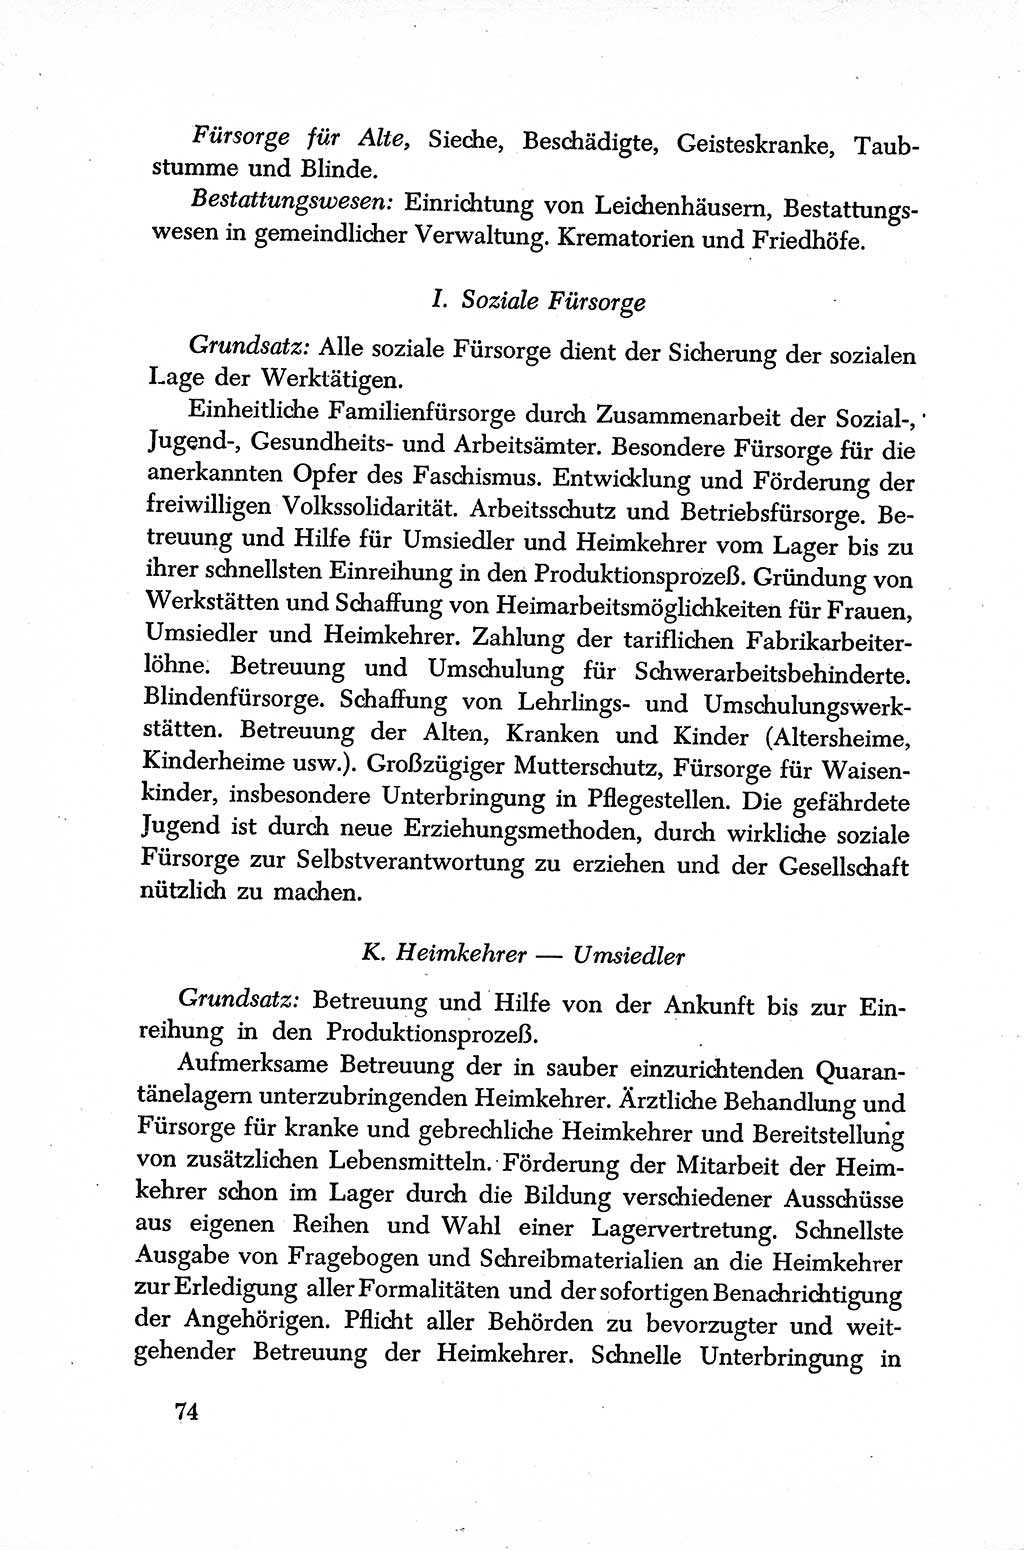 Dokumente der Sozialistischen Einheitspartei Deutschlands (SED) [Sowjetische Besatzungszone (SBZ) Deutschlands] 1946-1948, Seite 74 (Dok. SED SBZ Dtl. 1946-1948, S. 74)